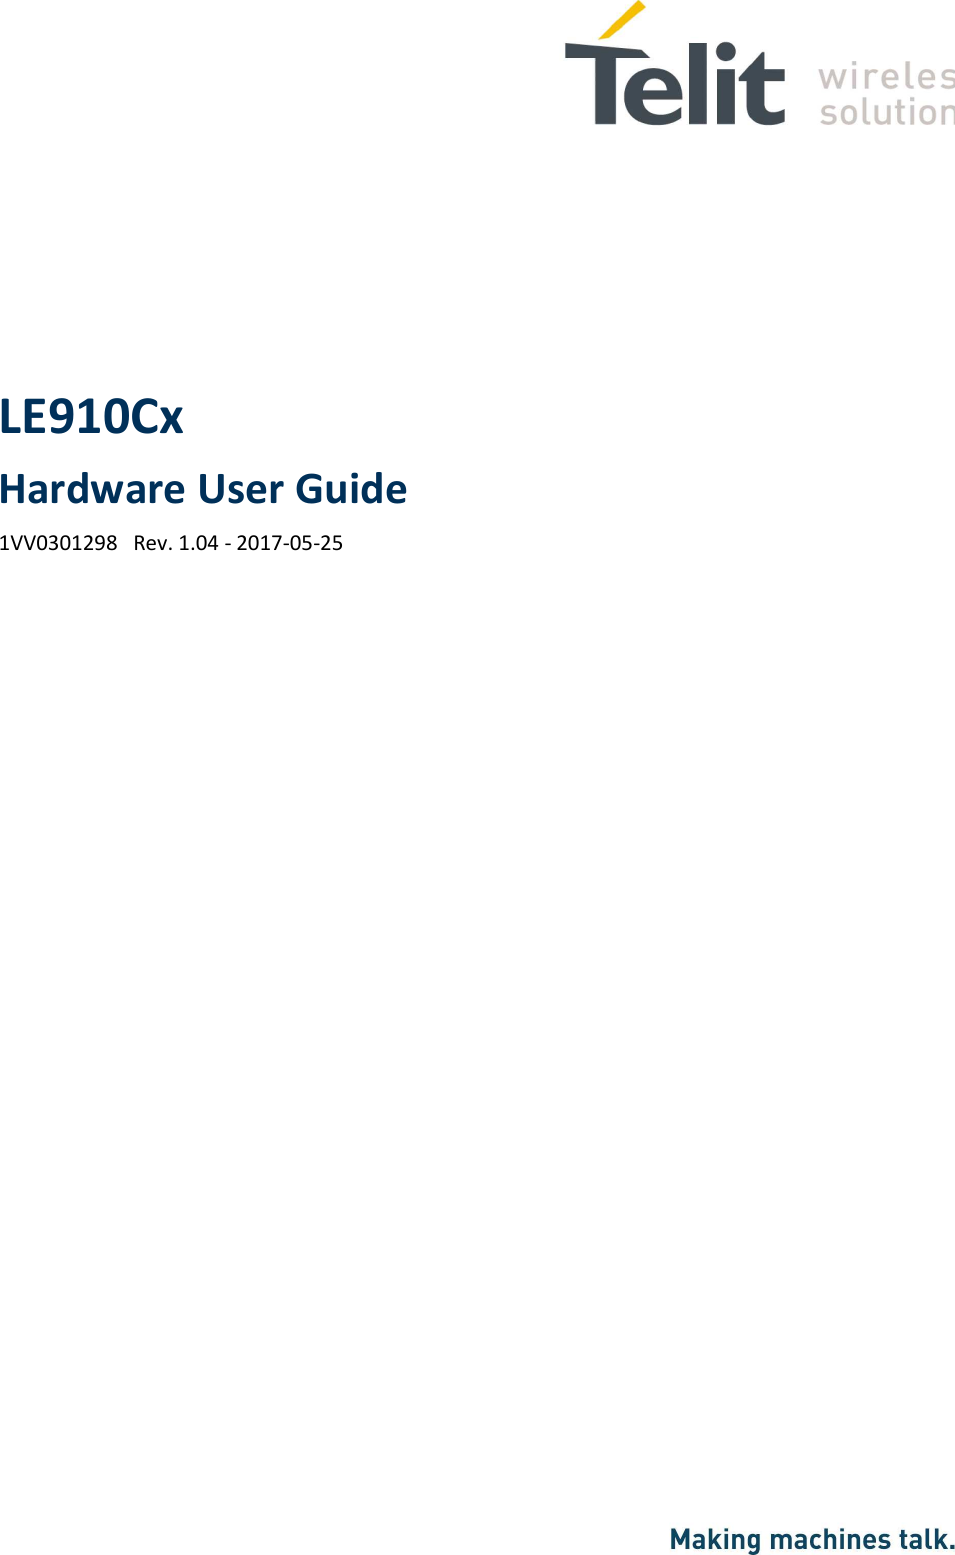   LE910Cx  Hardware User Guide 1VV0301298   Rev. 1.04 - 2017-05-25 